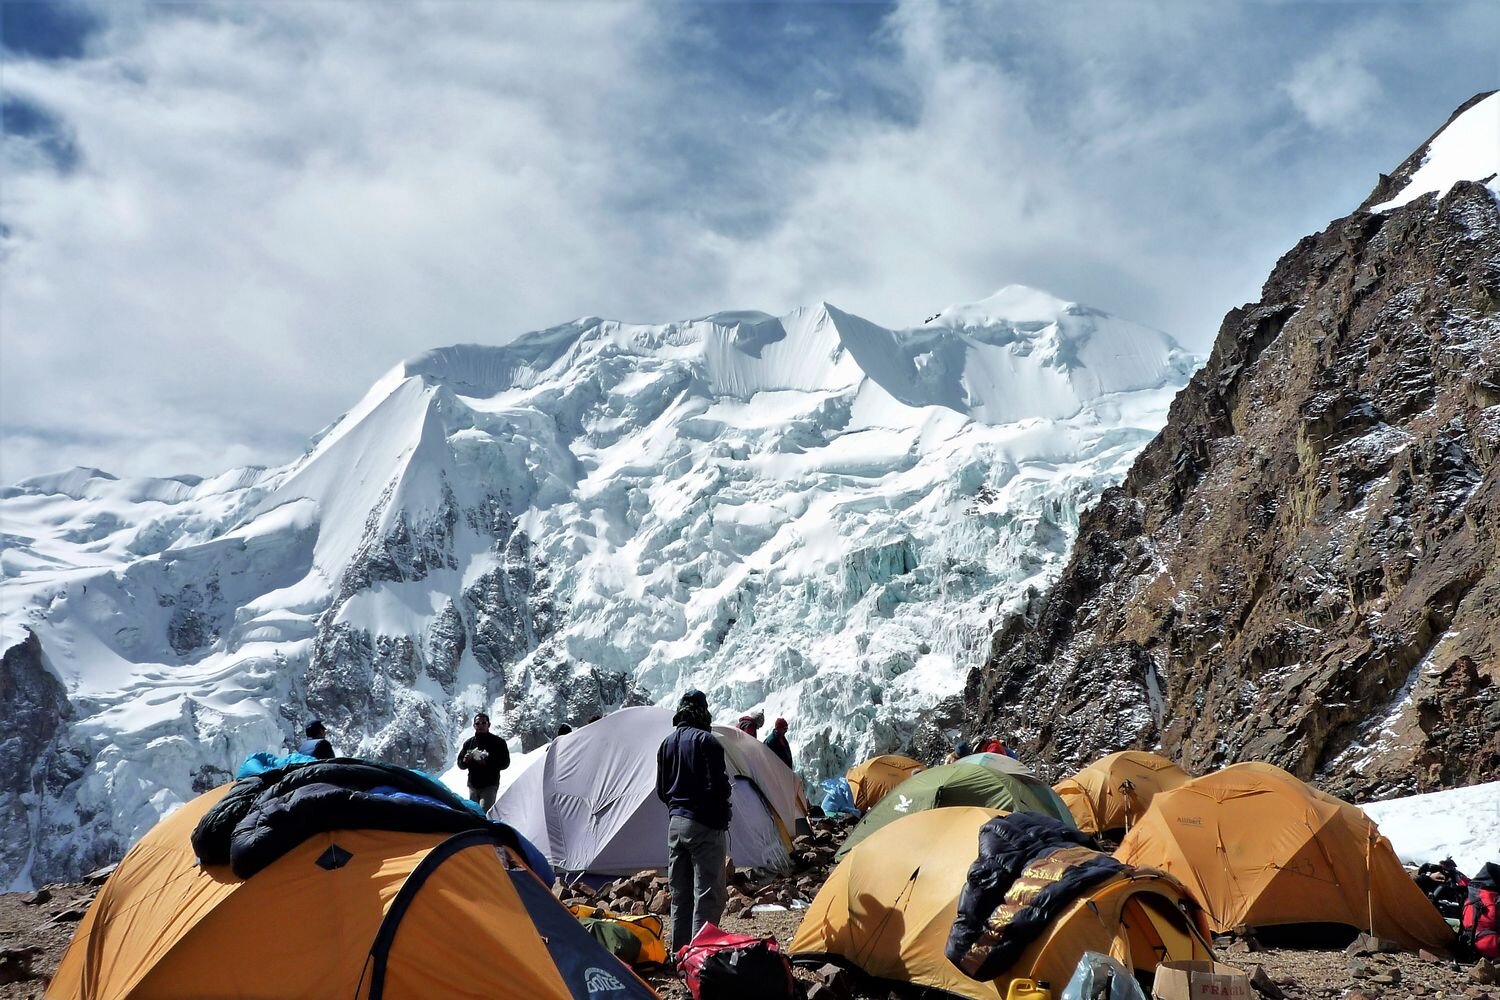  Nido de Condores high camp Nevado Illimani Cordillera Real. Andes range. 